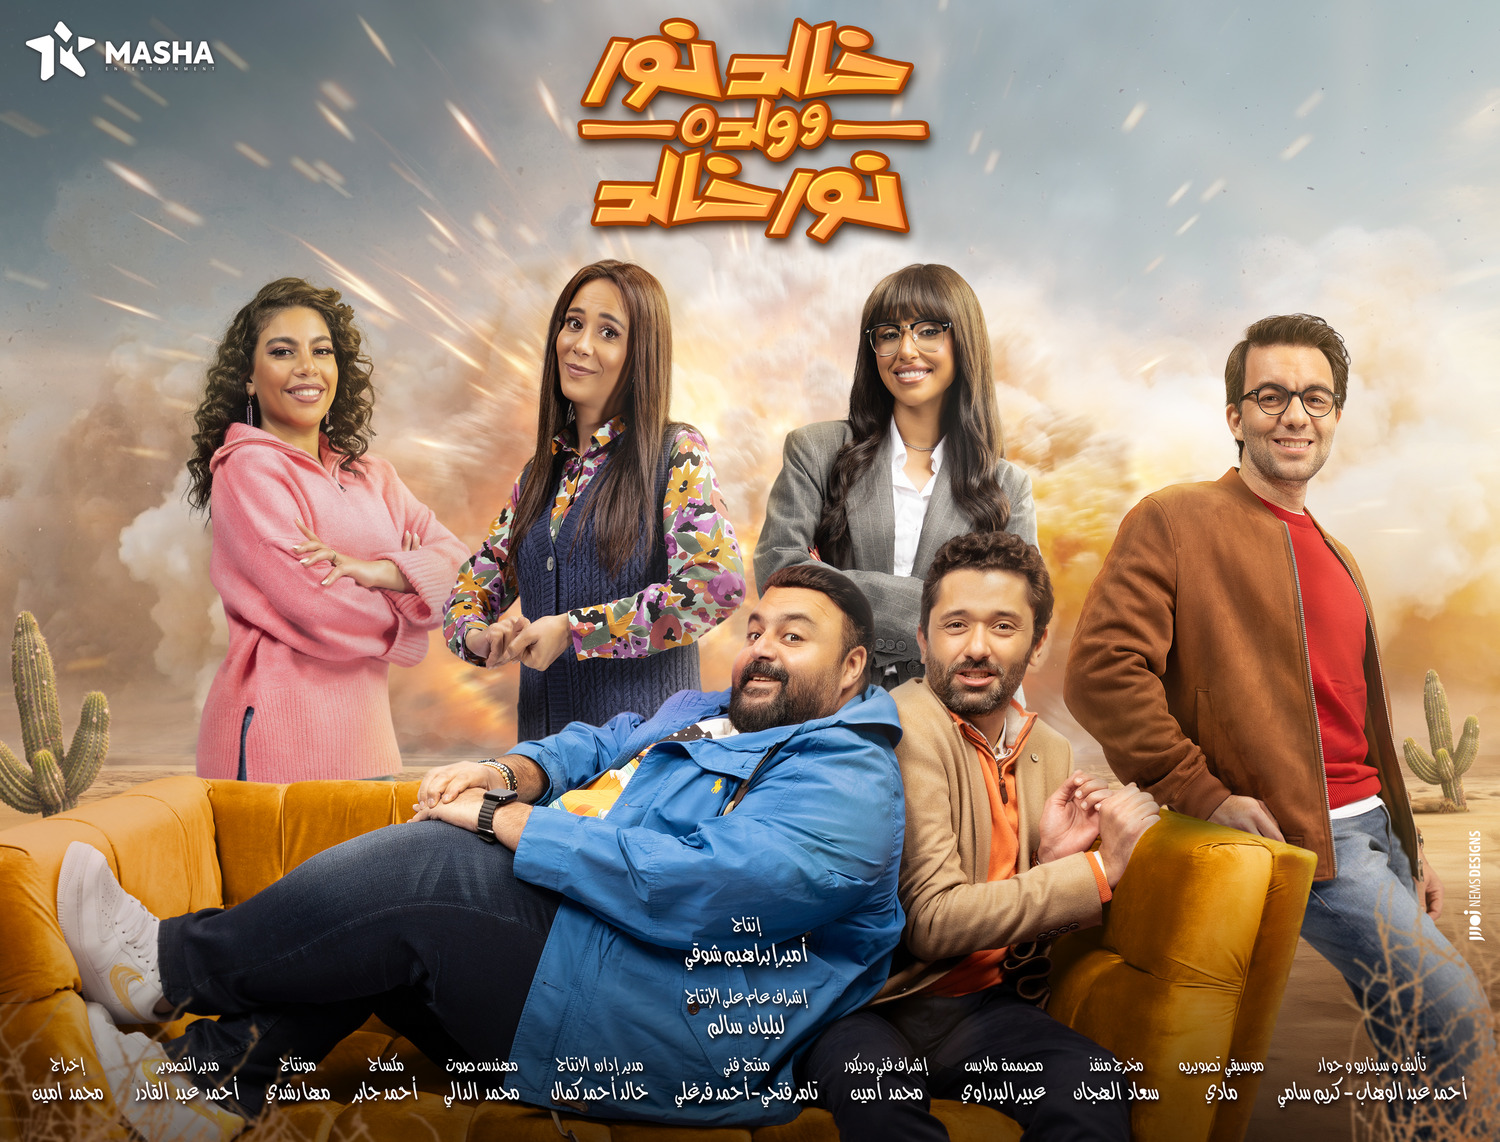 Extra Large TV Poster Image for Khaled Noor W Waldo Noor Khaled (#5 of 13)